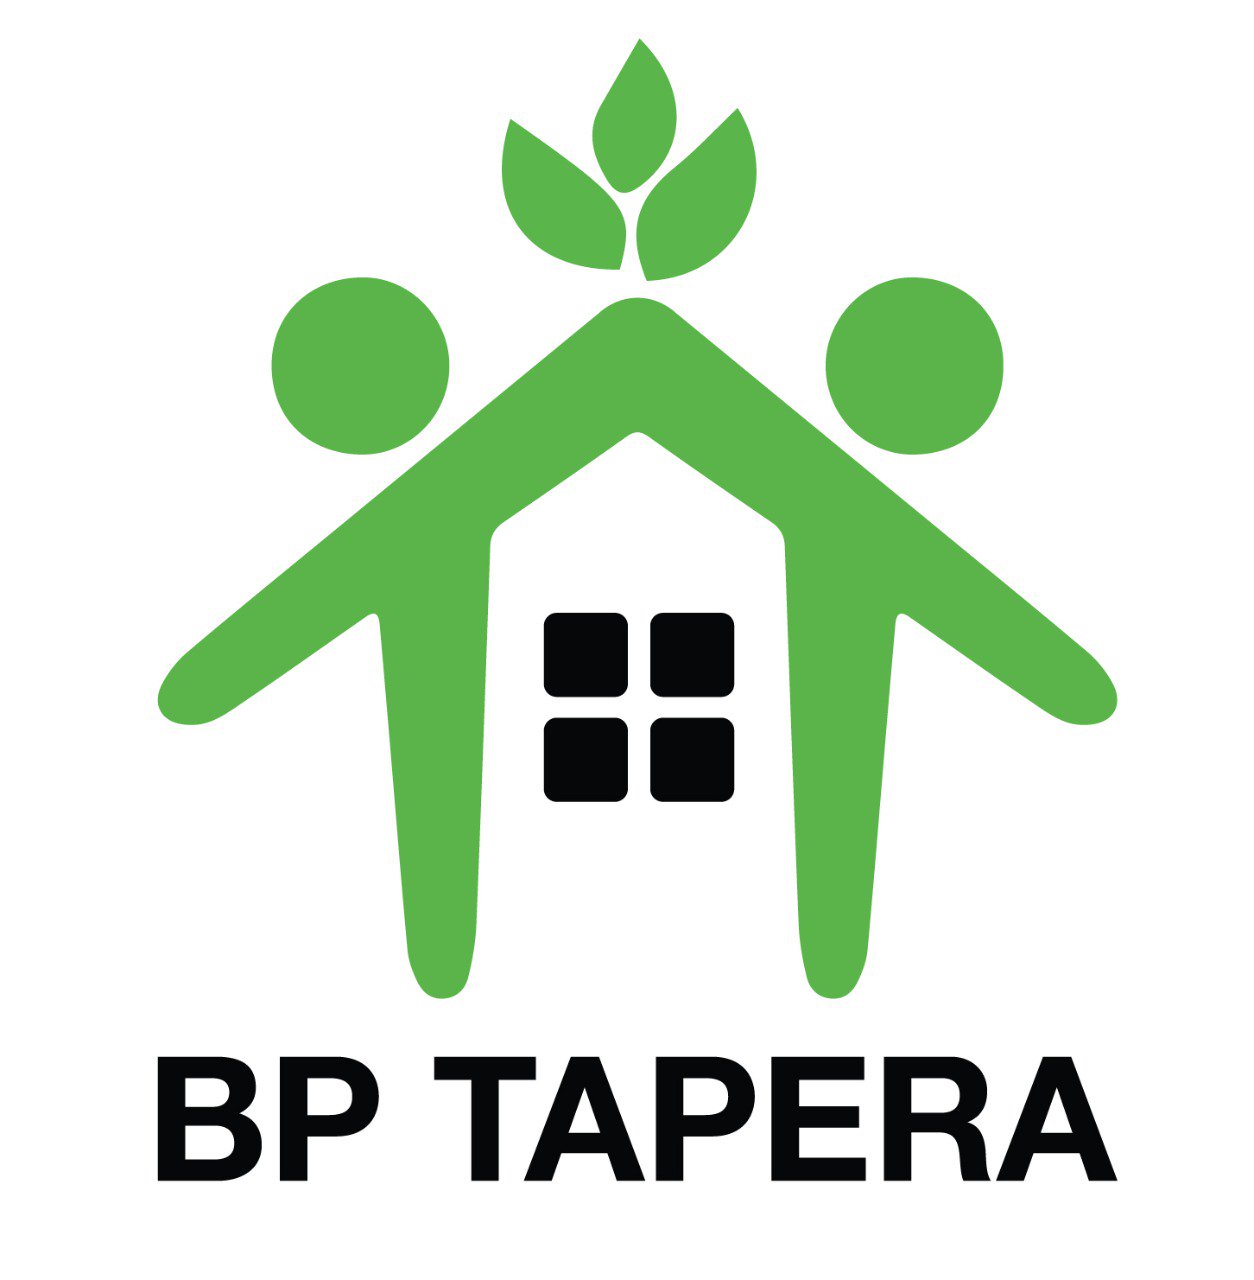 BP TAPERA